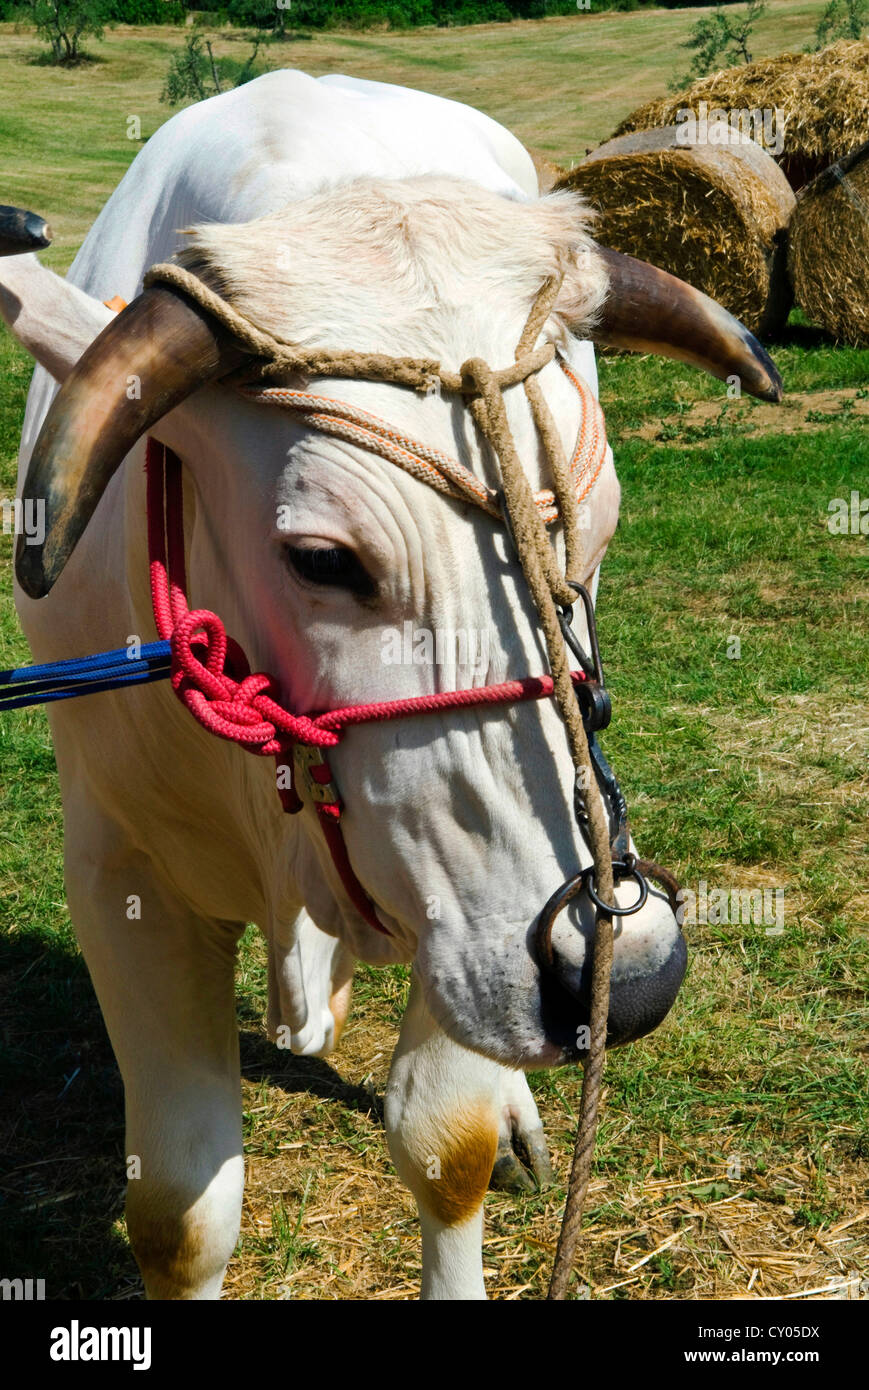 chianina bull with horns